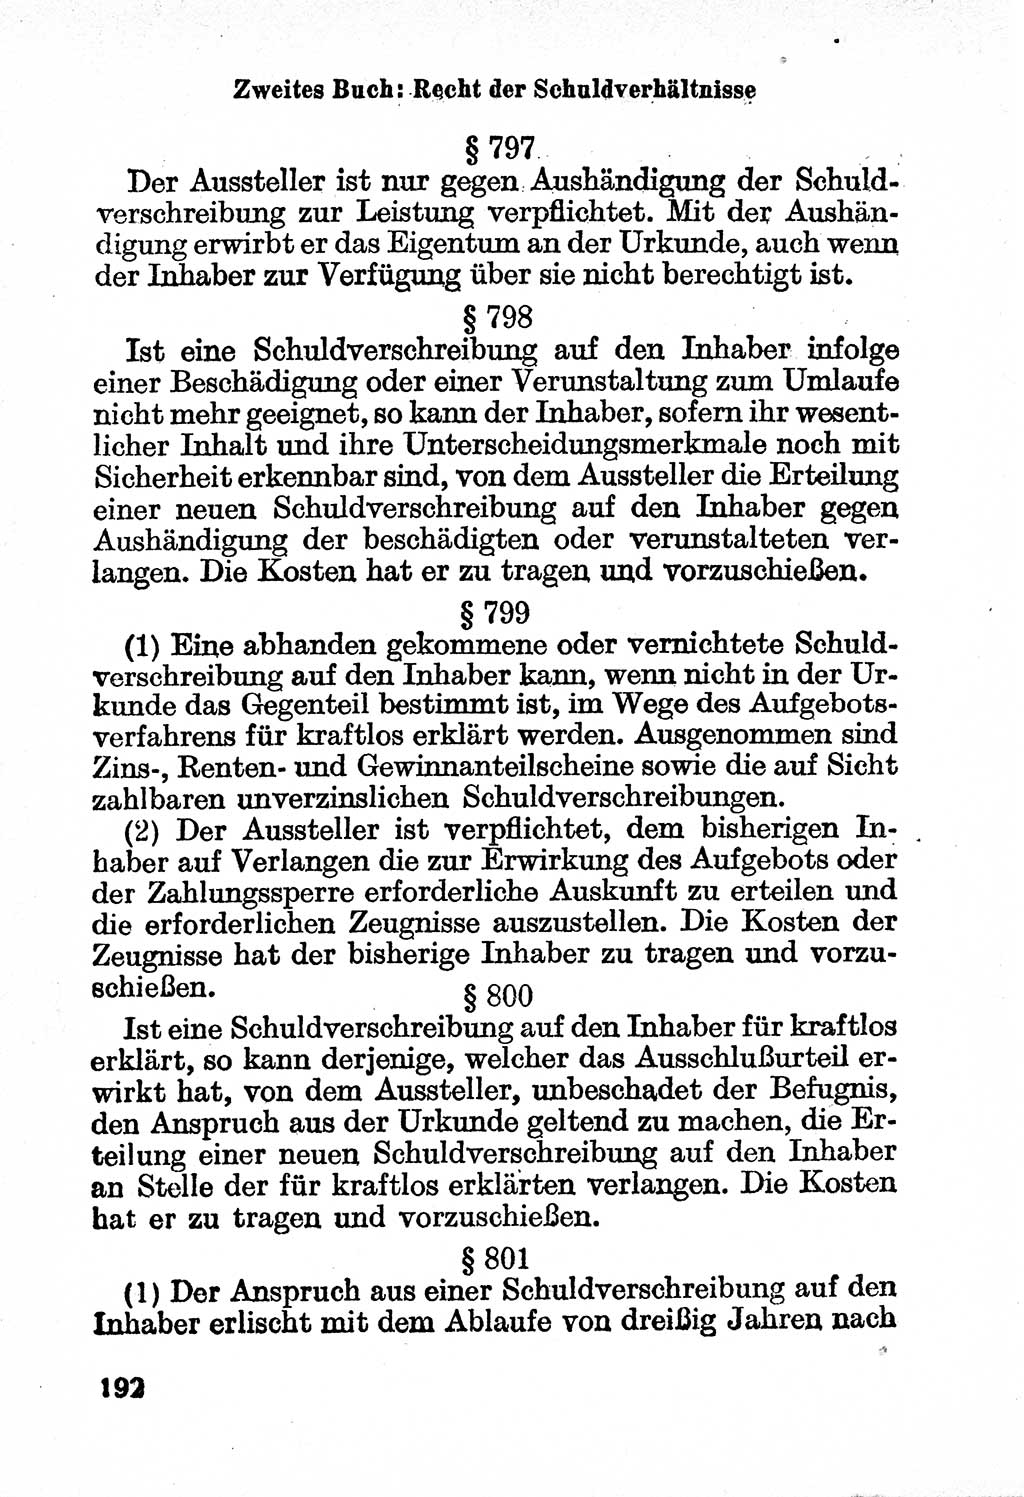 Bürgerliches Gesetzbuch (BGB) nebst wichtigen Nebengesetzen [Deutsche Demokratische Republik (DDR)] 1956, Seite 192 (BGB Nebenges. DDR 1956, S. 192)